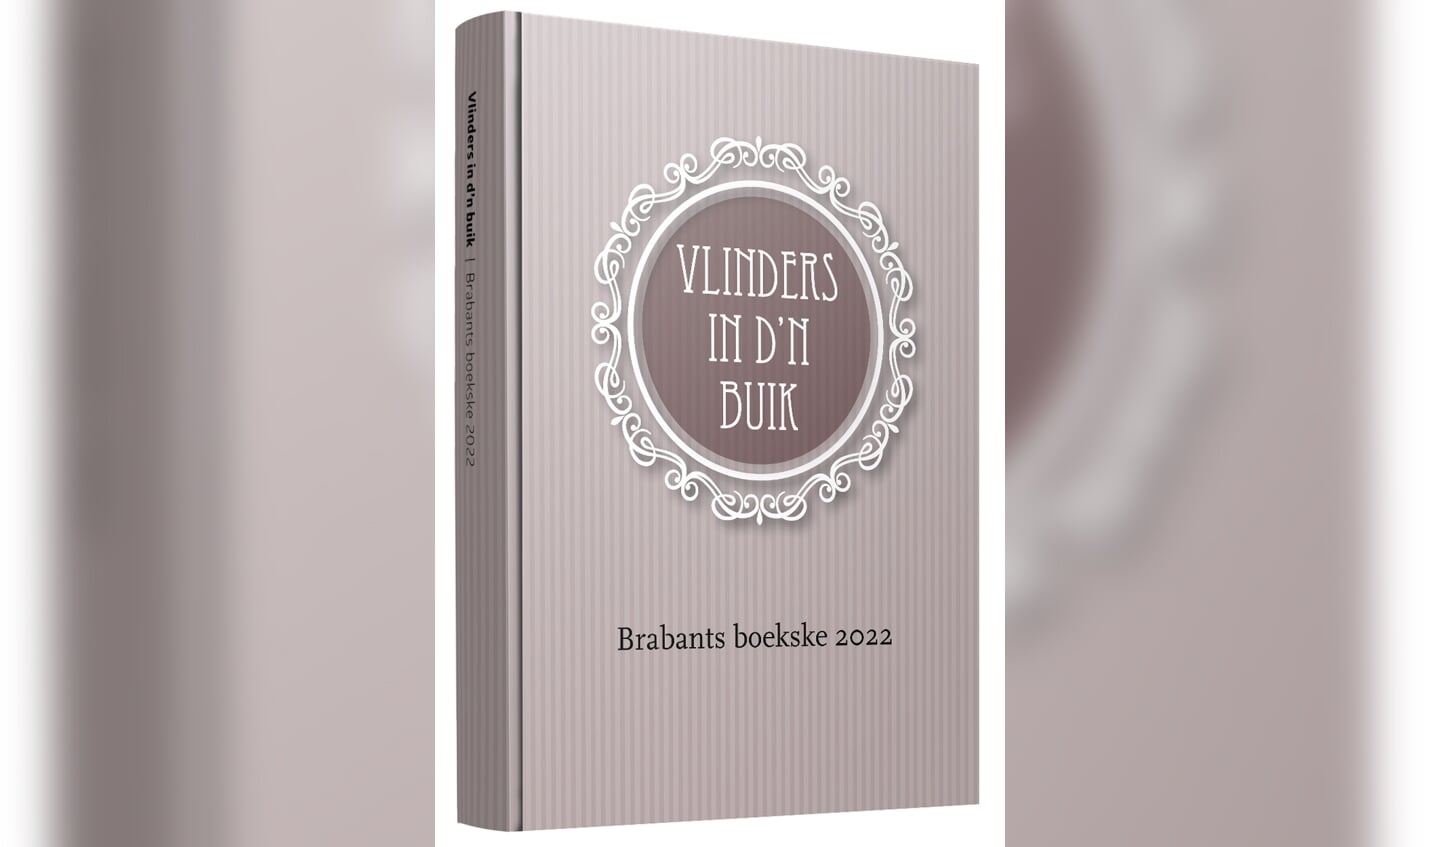 Brabants boekske 2022